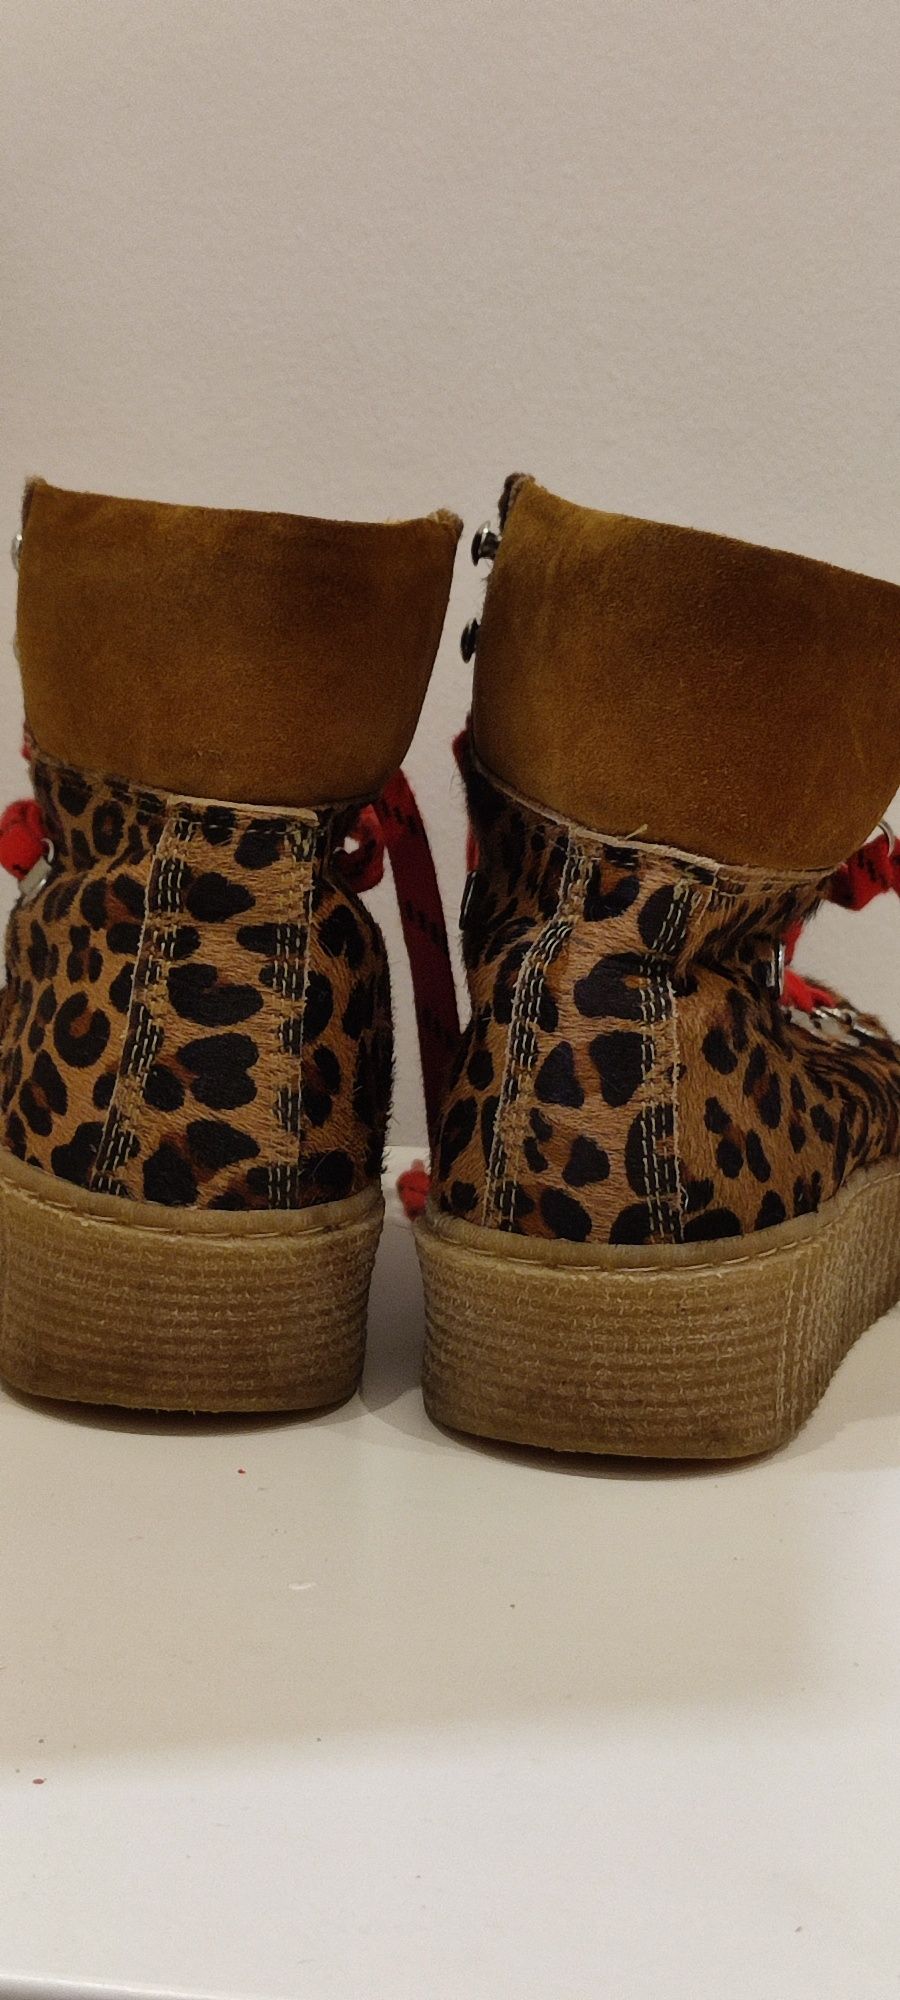 Sznurowane buty Shoe The Bear Agda Leo w kolorze brązowym w panterkę